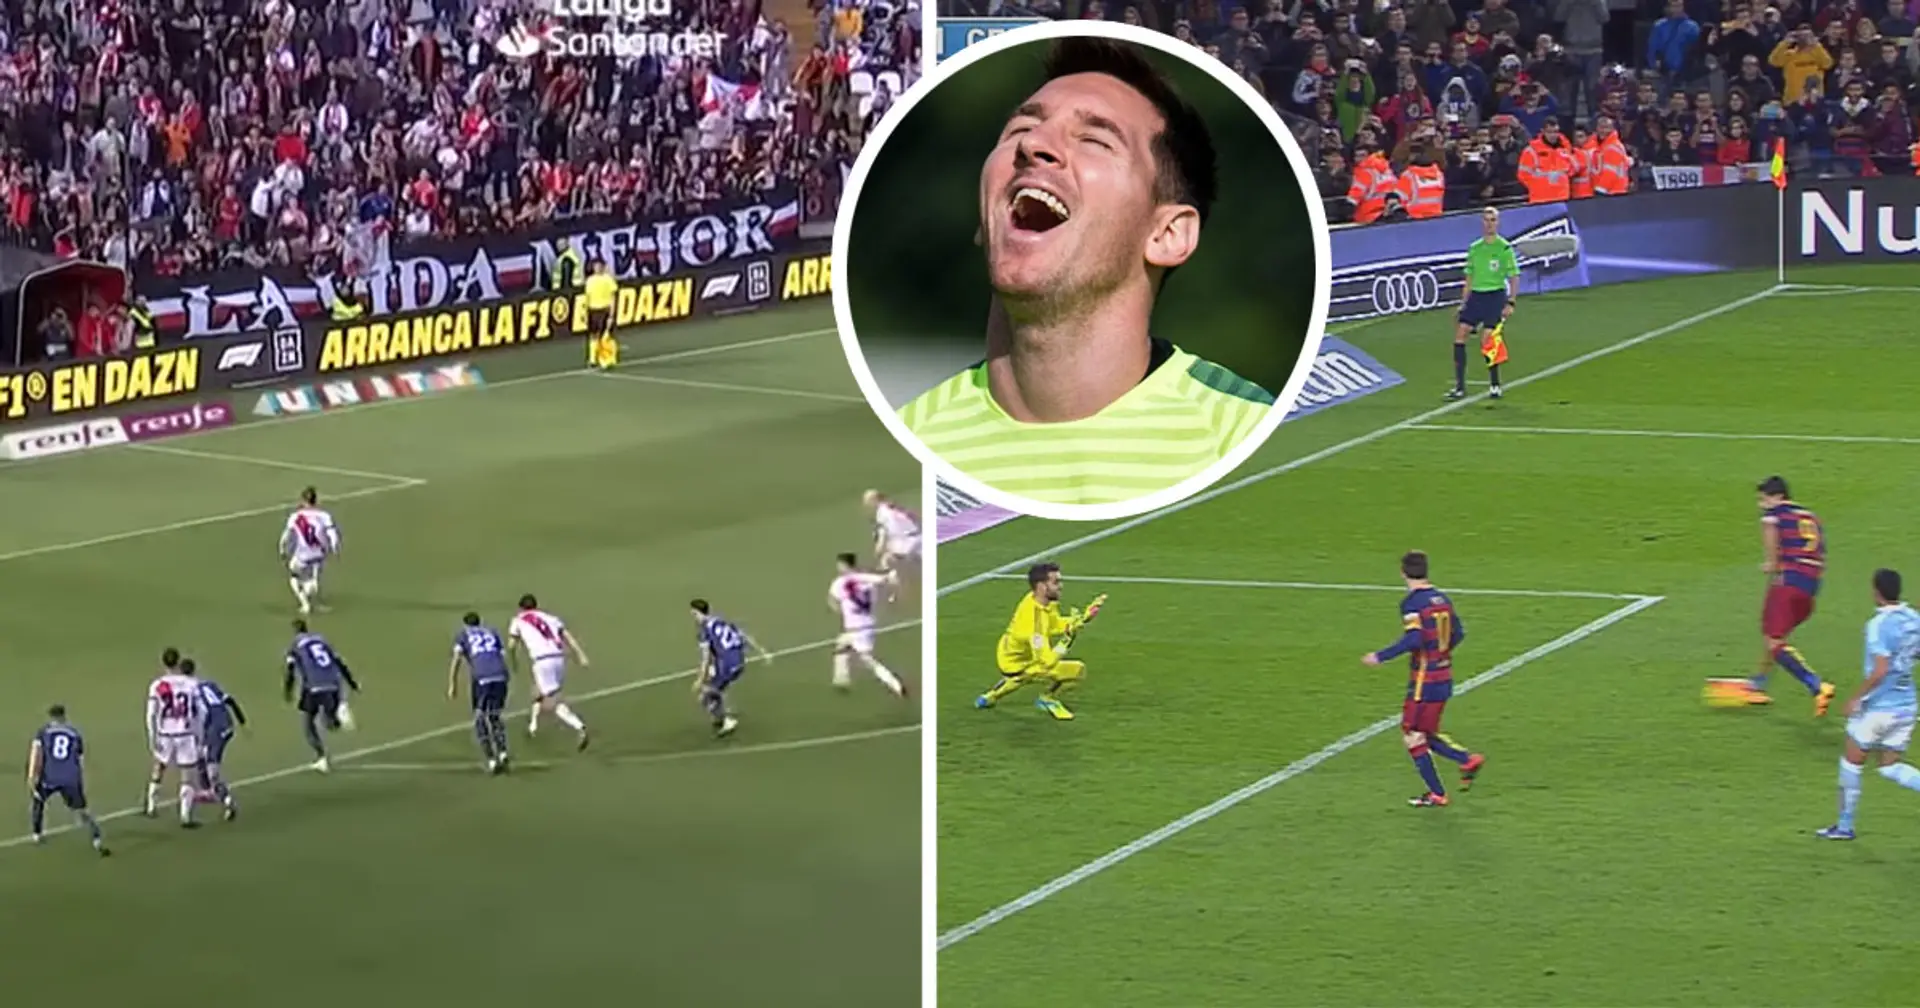 Rayo Vallecano versucht Messi-Suarez-Elfmeter zu wiederholen und scheitert kläglich 